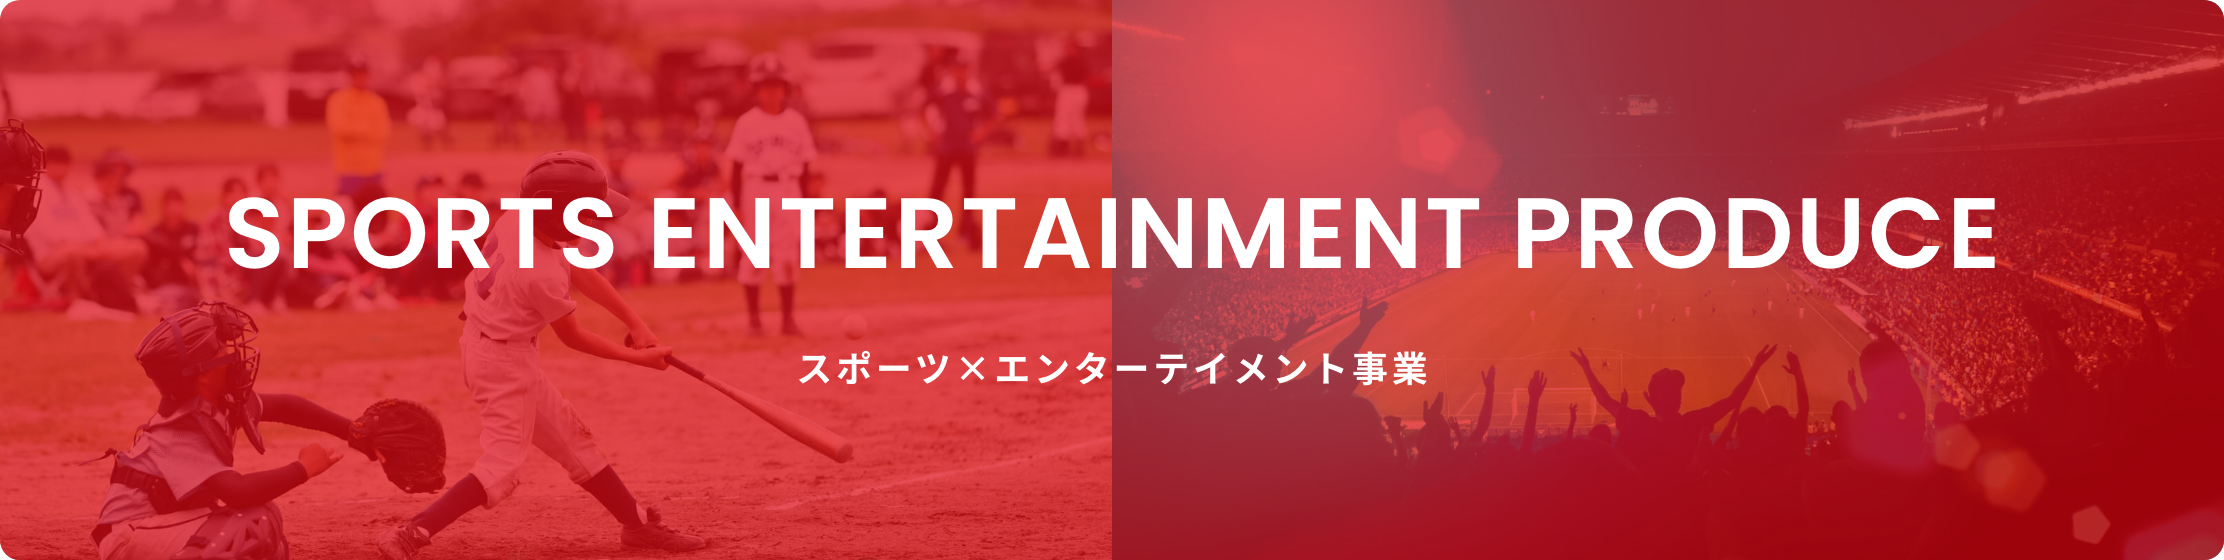 SPORTS ENTERTAINMENT PRODUCE スポーツ×エンターテイメント事業